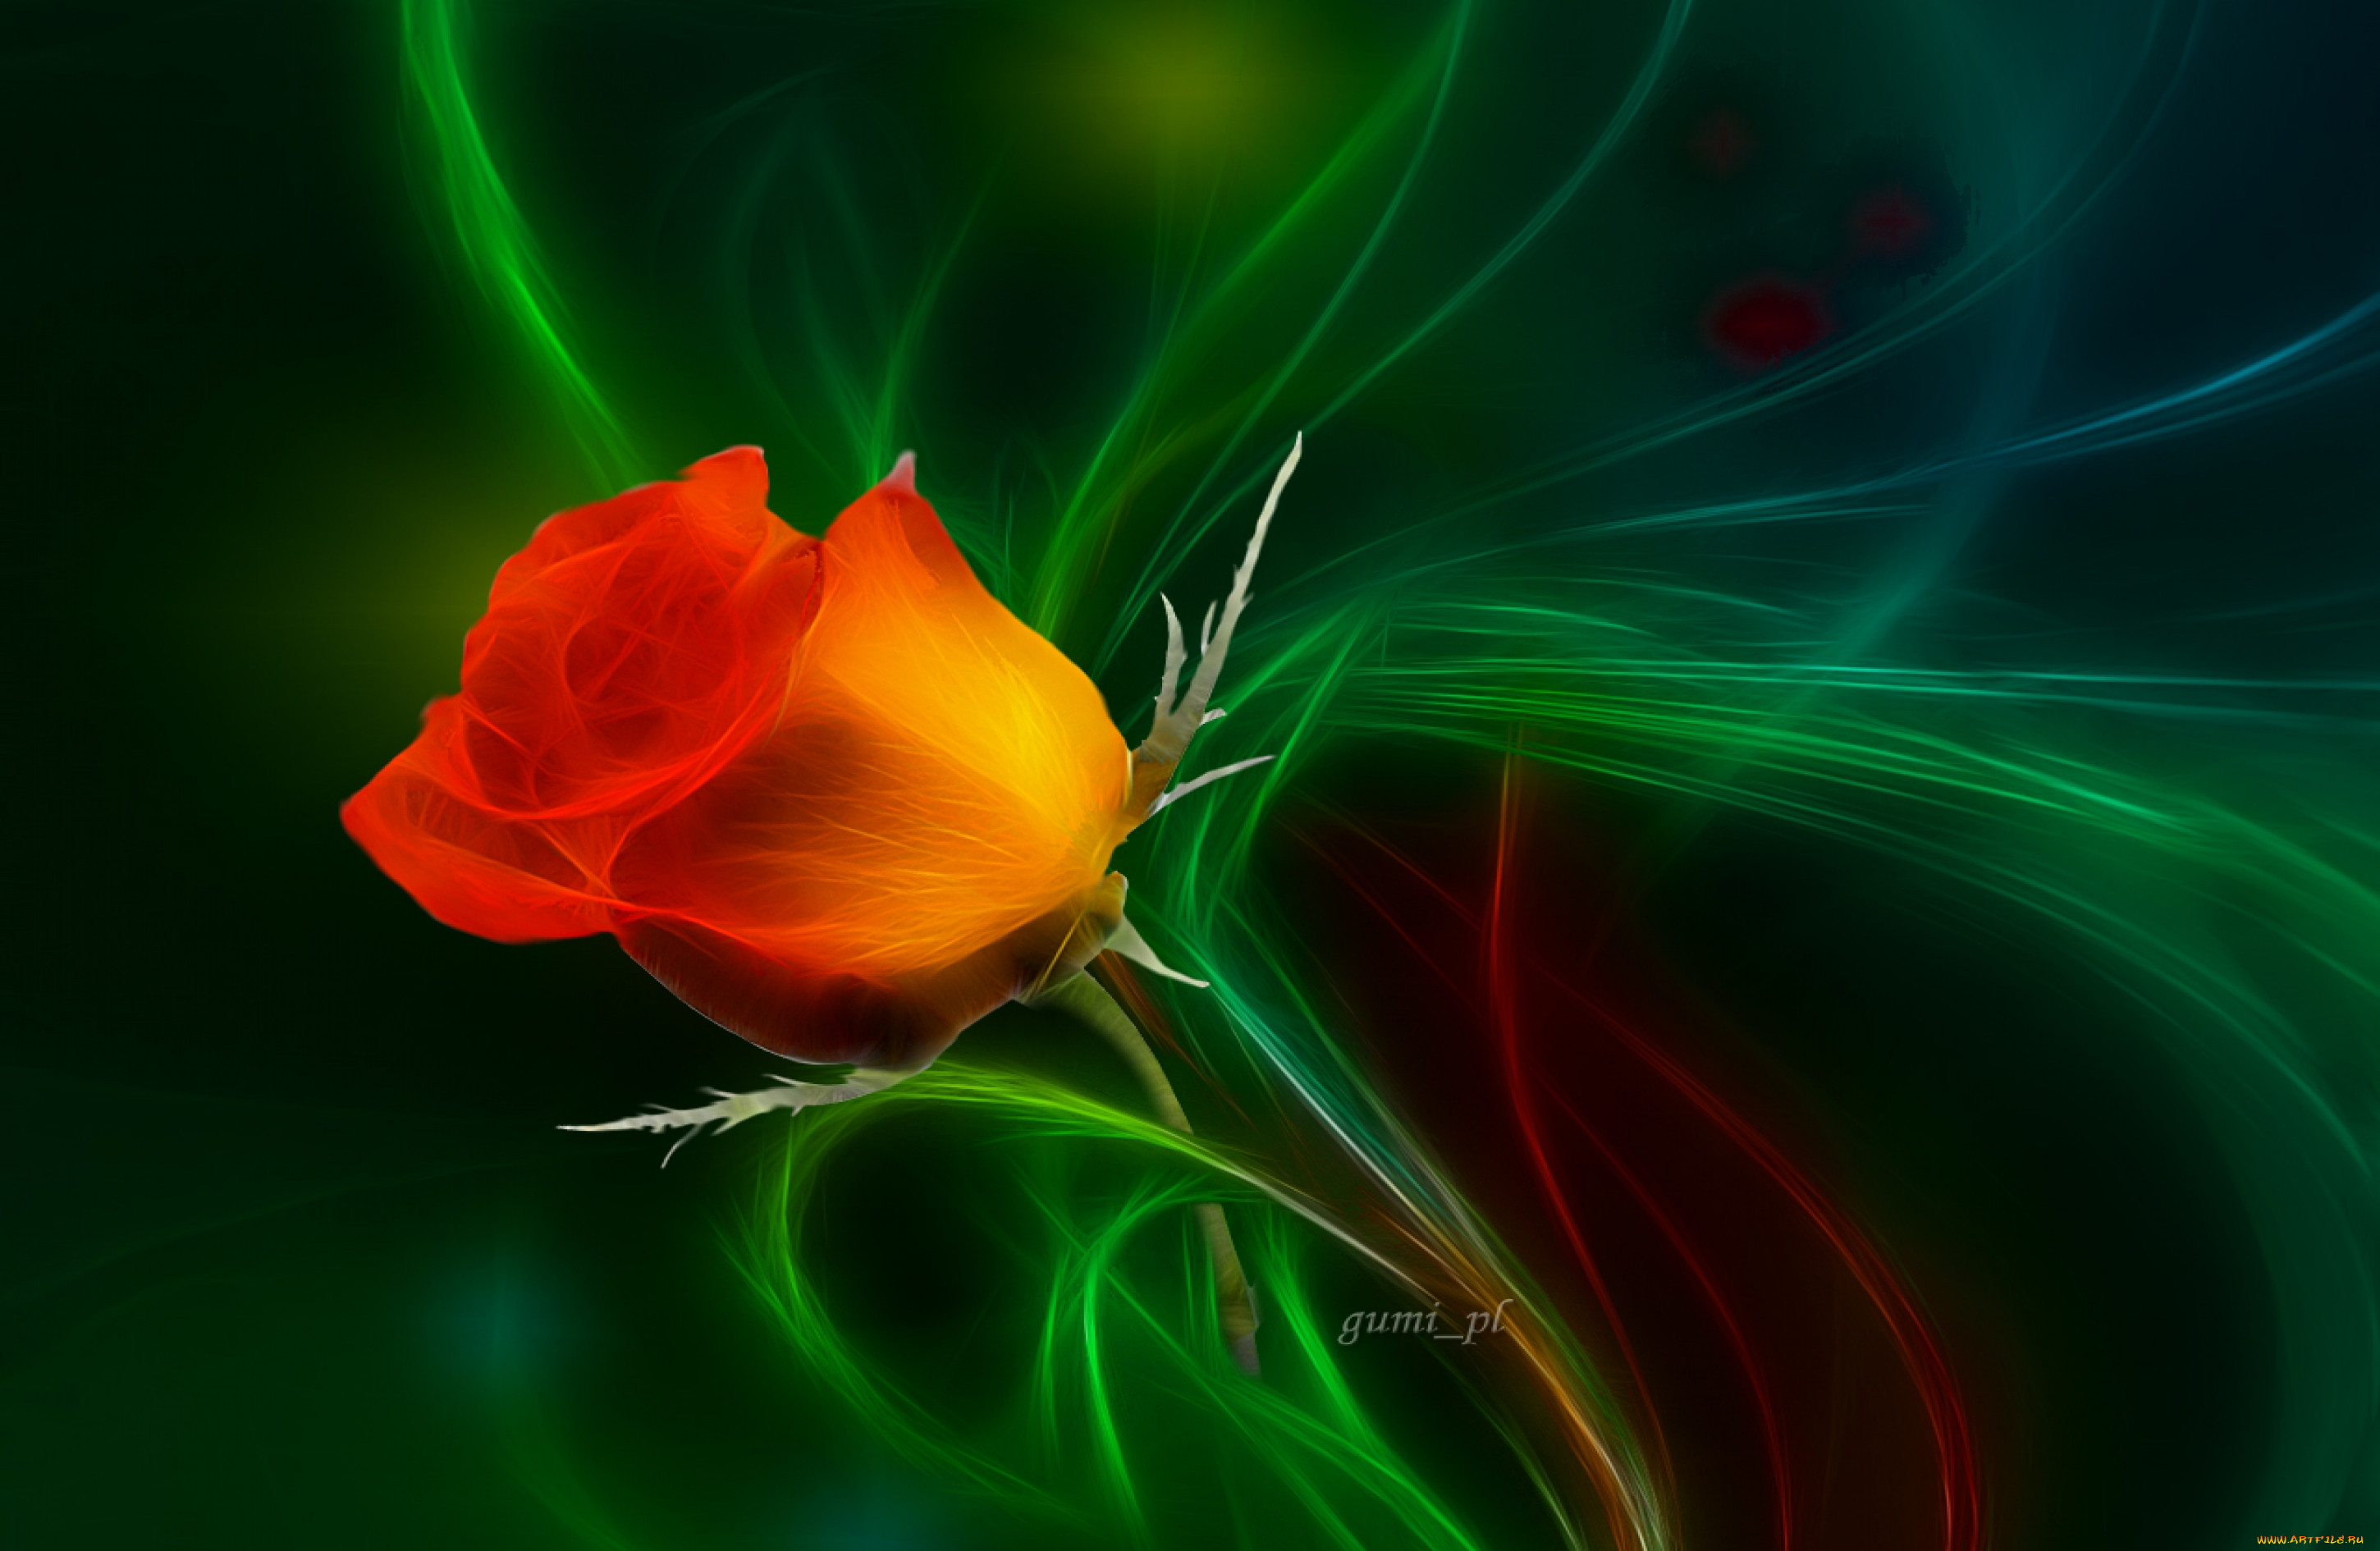 Красные розы через зеленое стекло. Розы на зеленом фоне. Красный цветок на зеленом фоне. Красные розы на зеленом фоне.